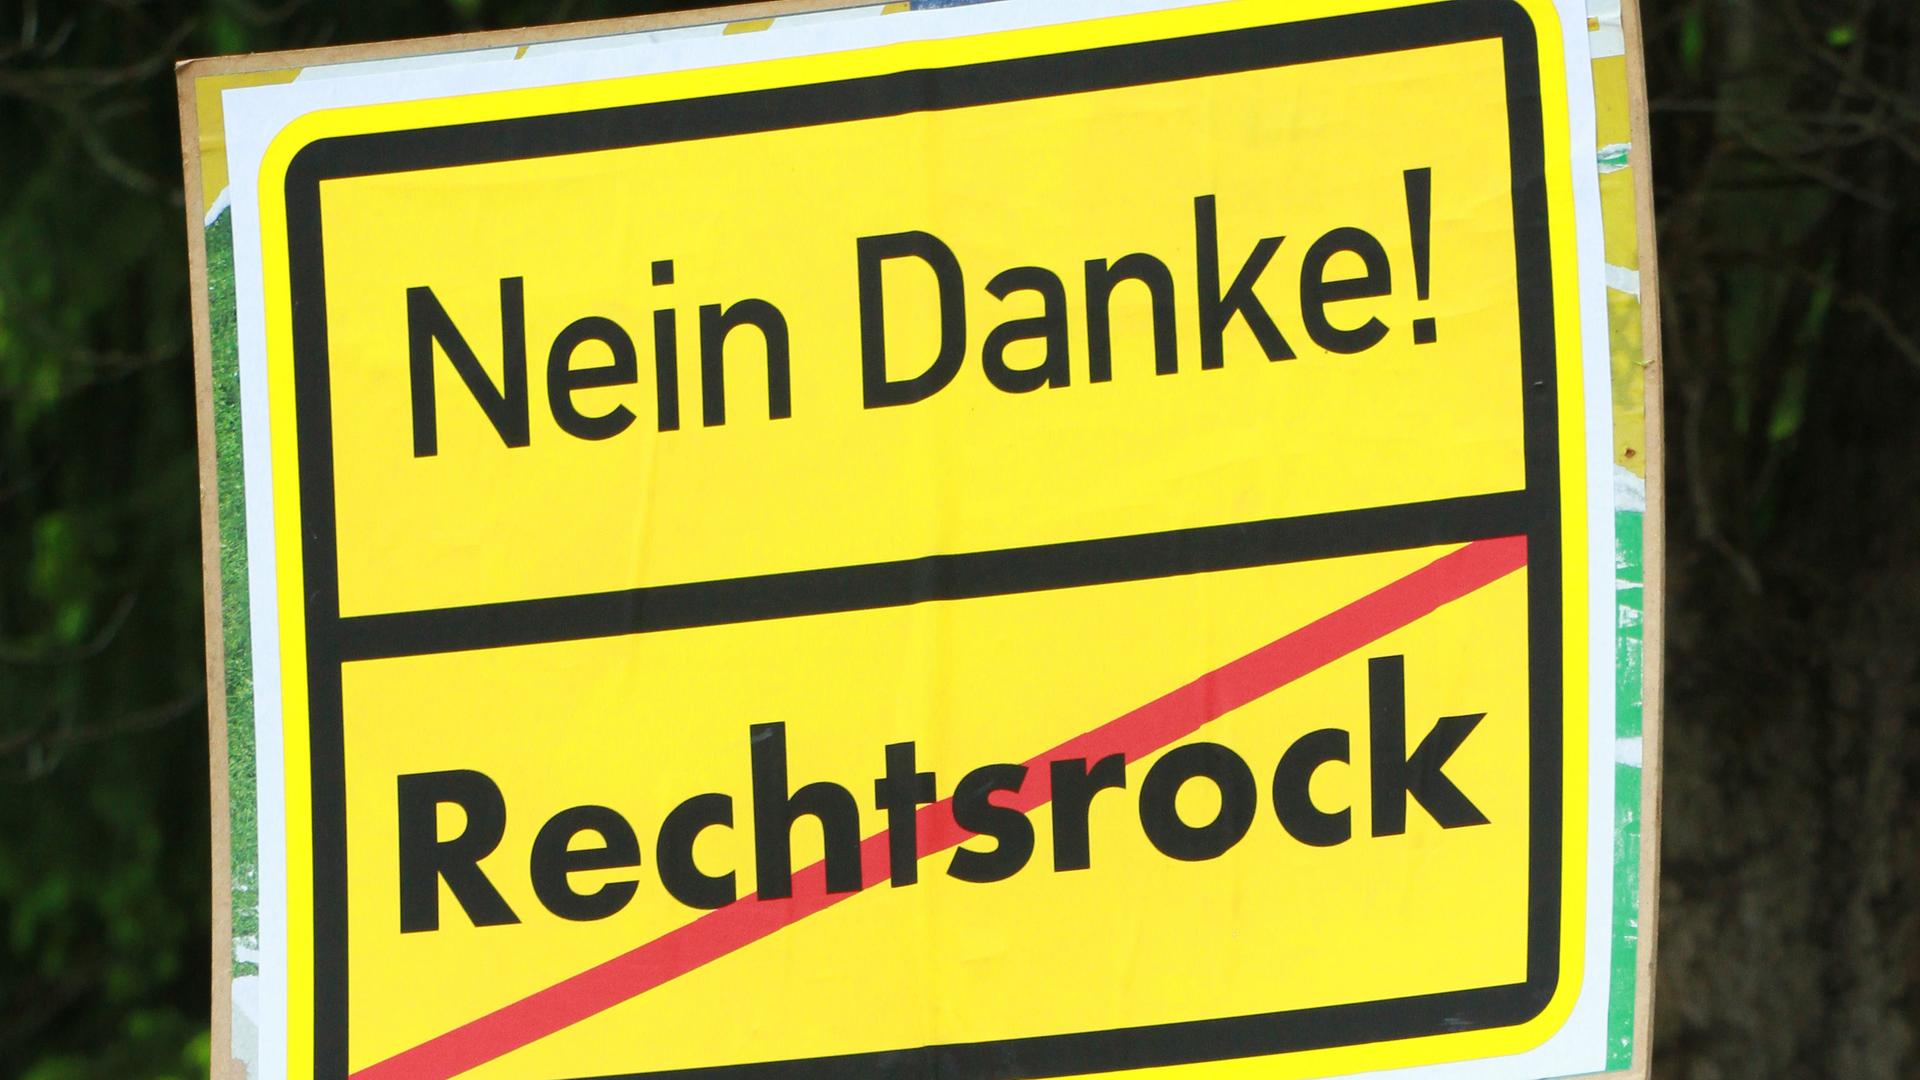 Ein selbstgemachtes Schild mit der Aufschrift "Nein Danke Rechtsrock".